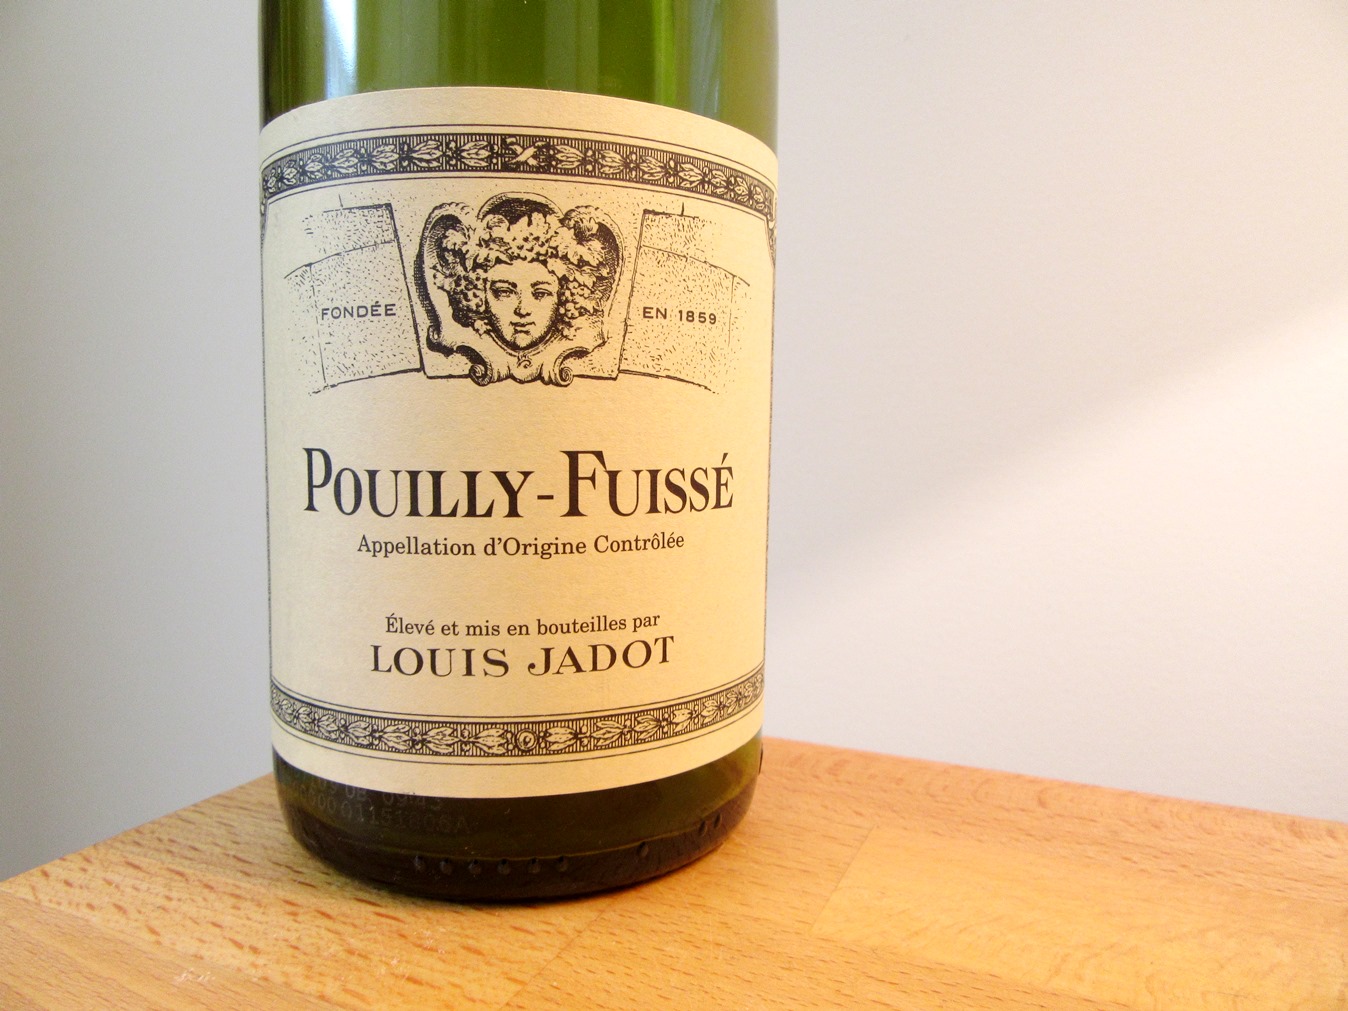 Louis Jadot, Pouilly-Fuissé 2015, Maconnais, France, Wine Casual